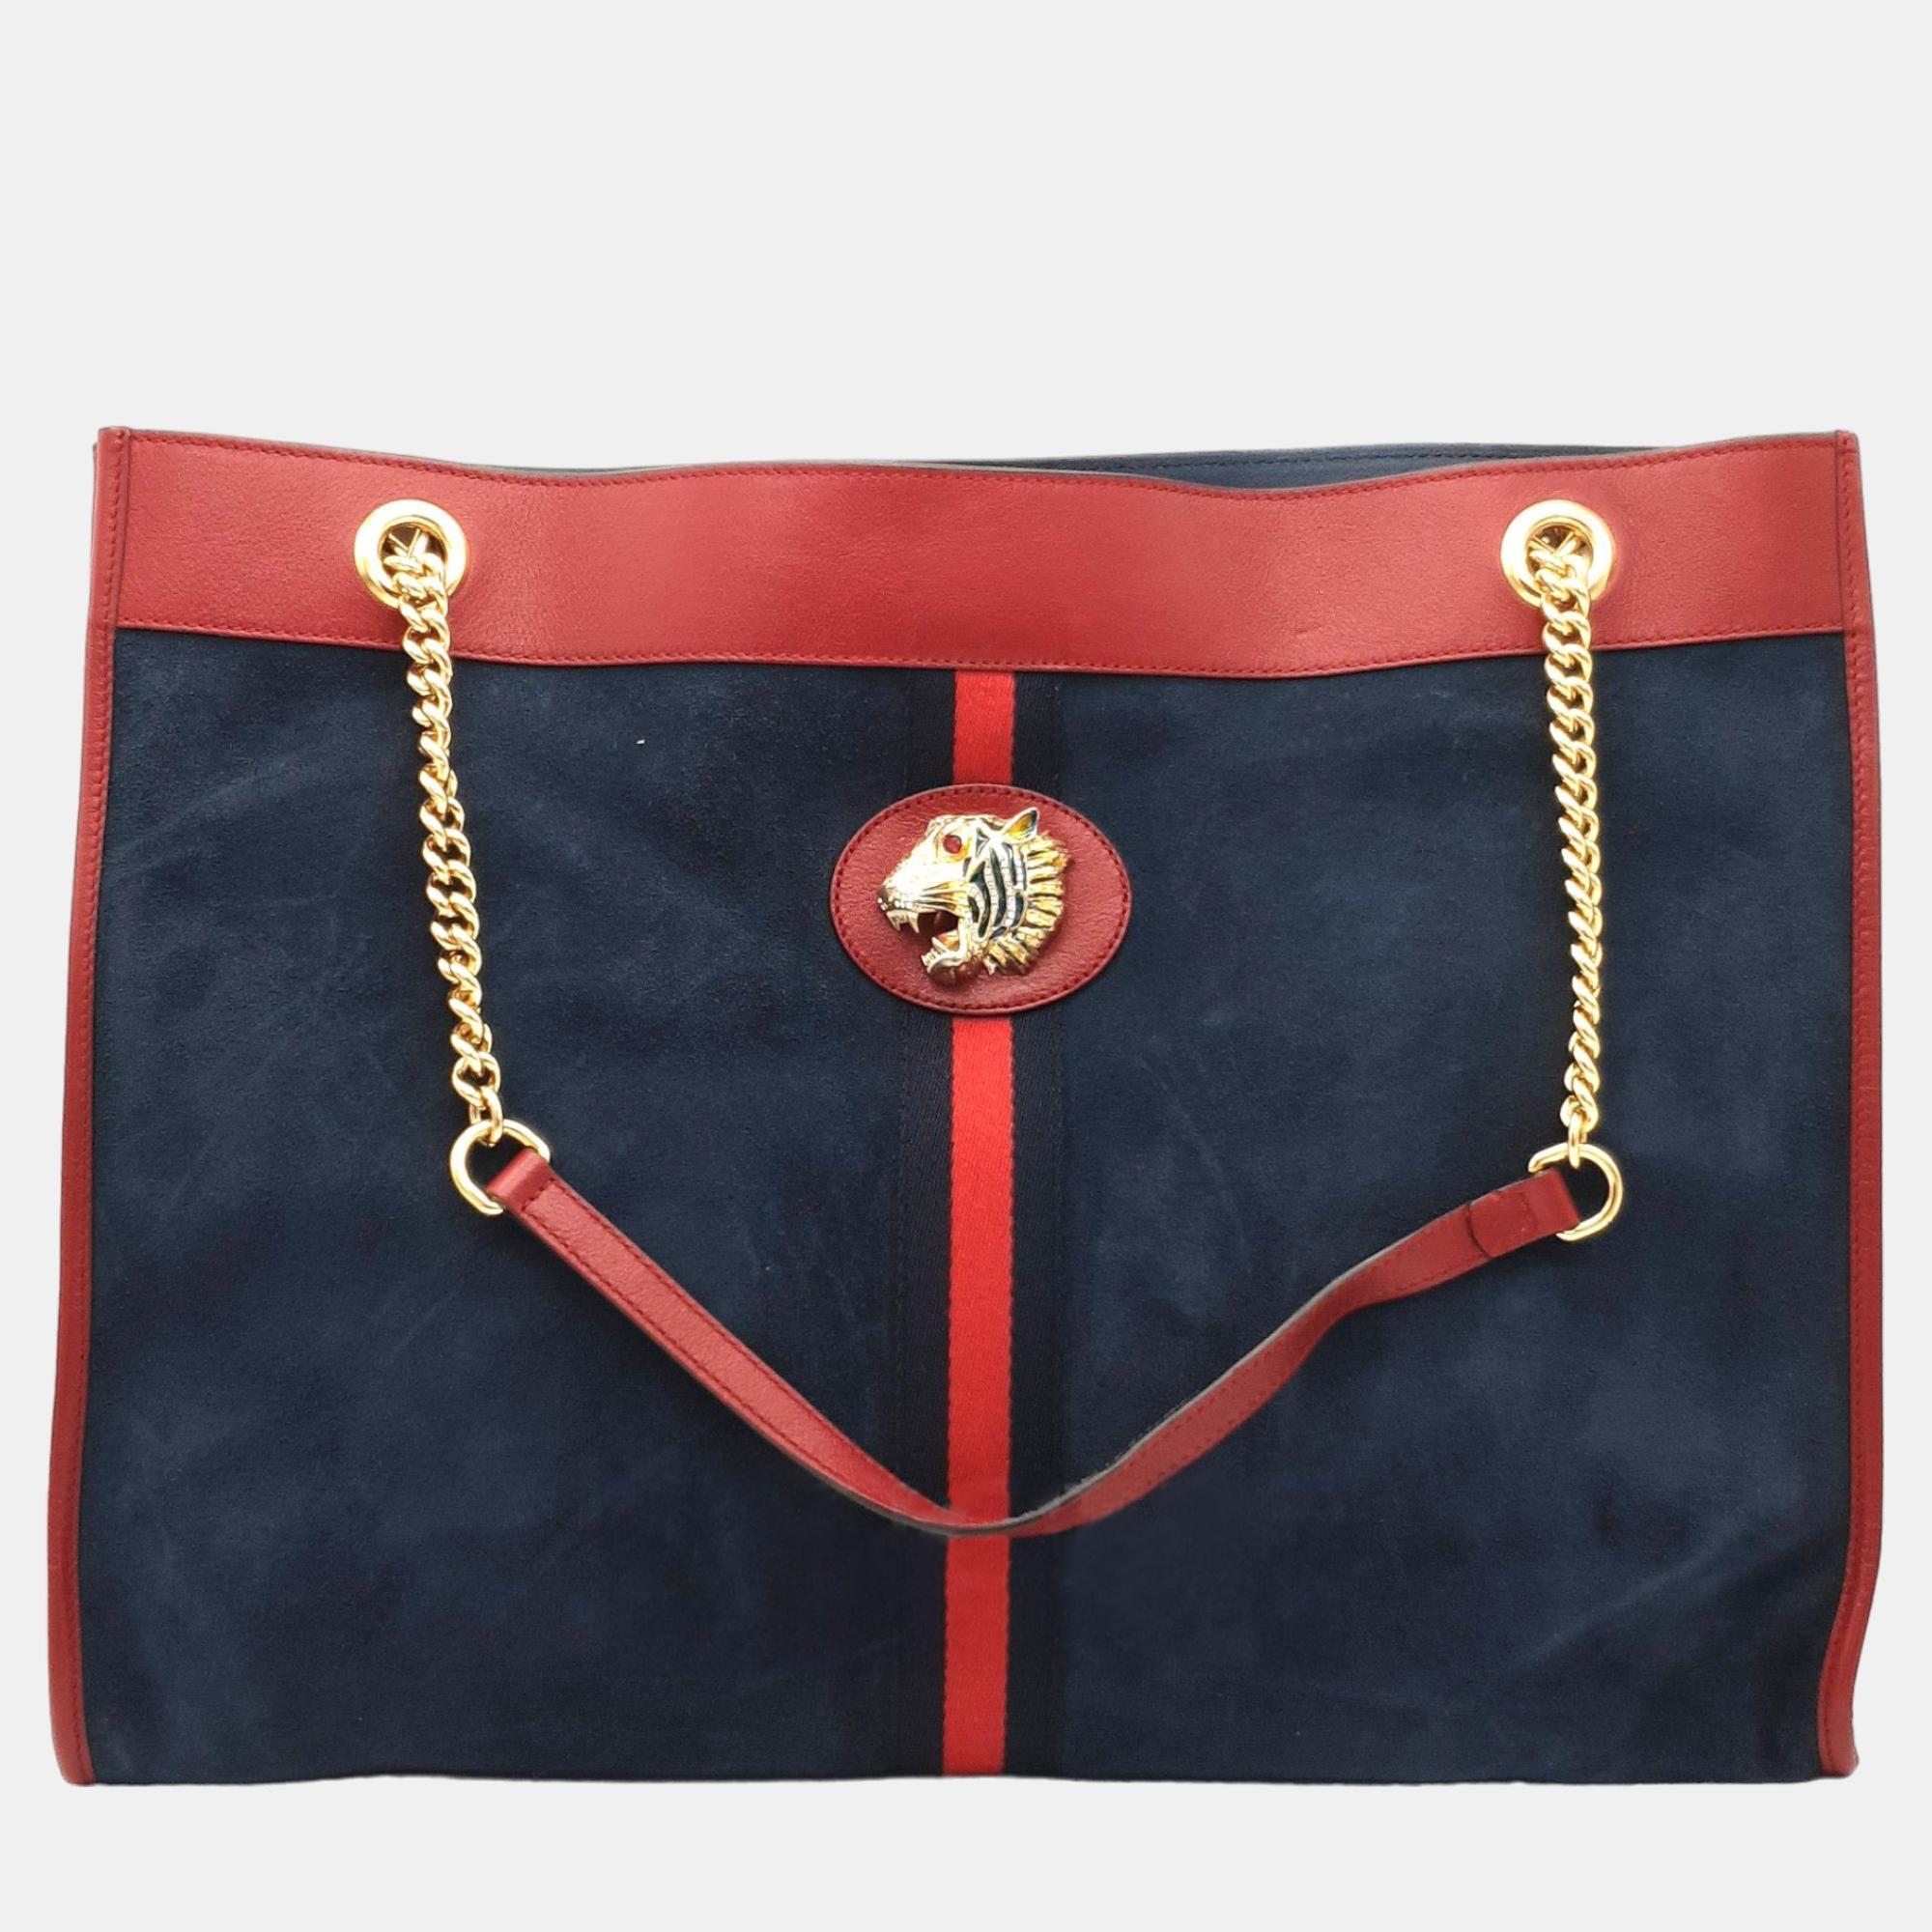 Gucci navy/red suede rajah tote bag